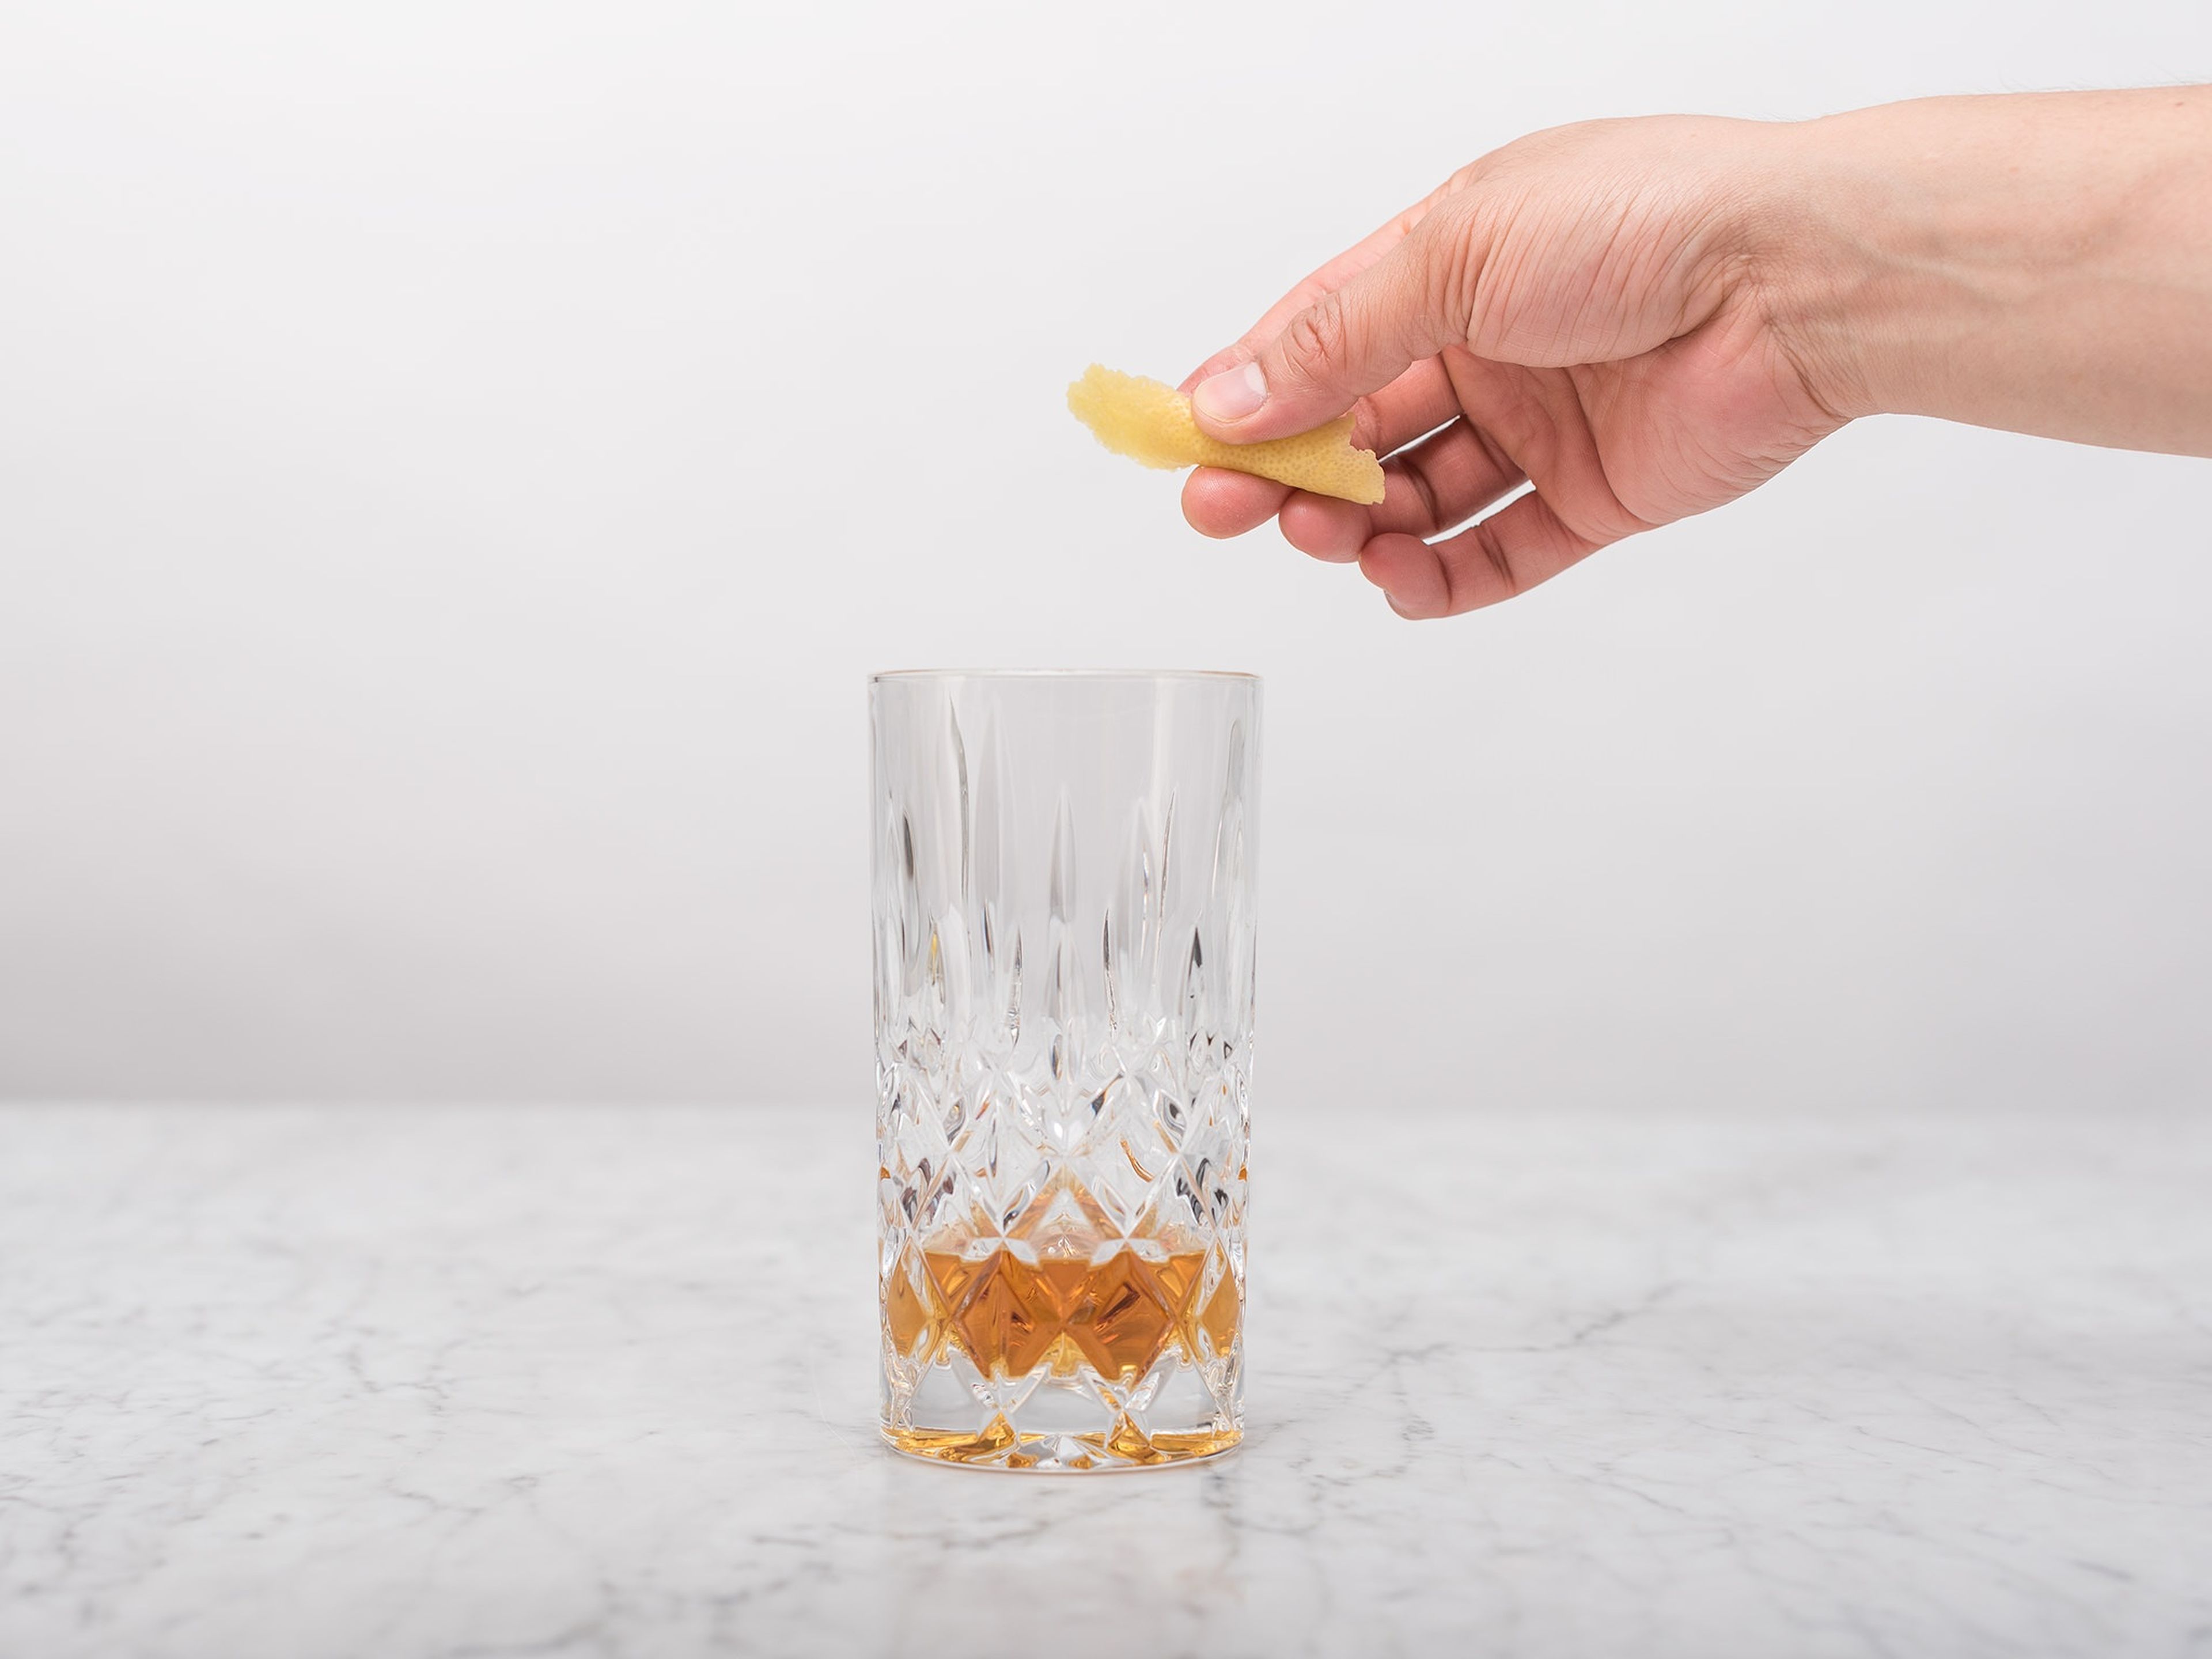 Für jedes Glas drei Zitronenschalen abschälen, spiralförmig in das Glas legen, wobei ein Ende über den Glasrand ragen sollte.